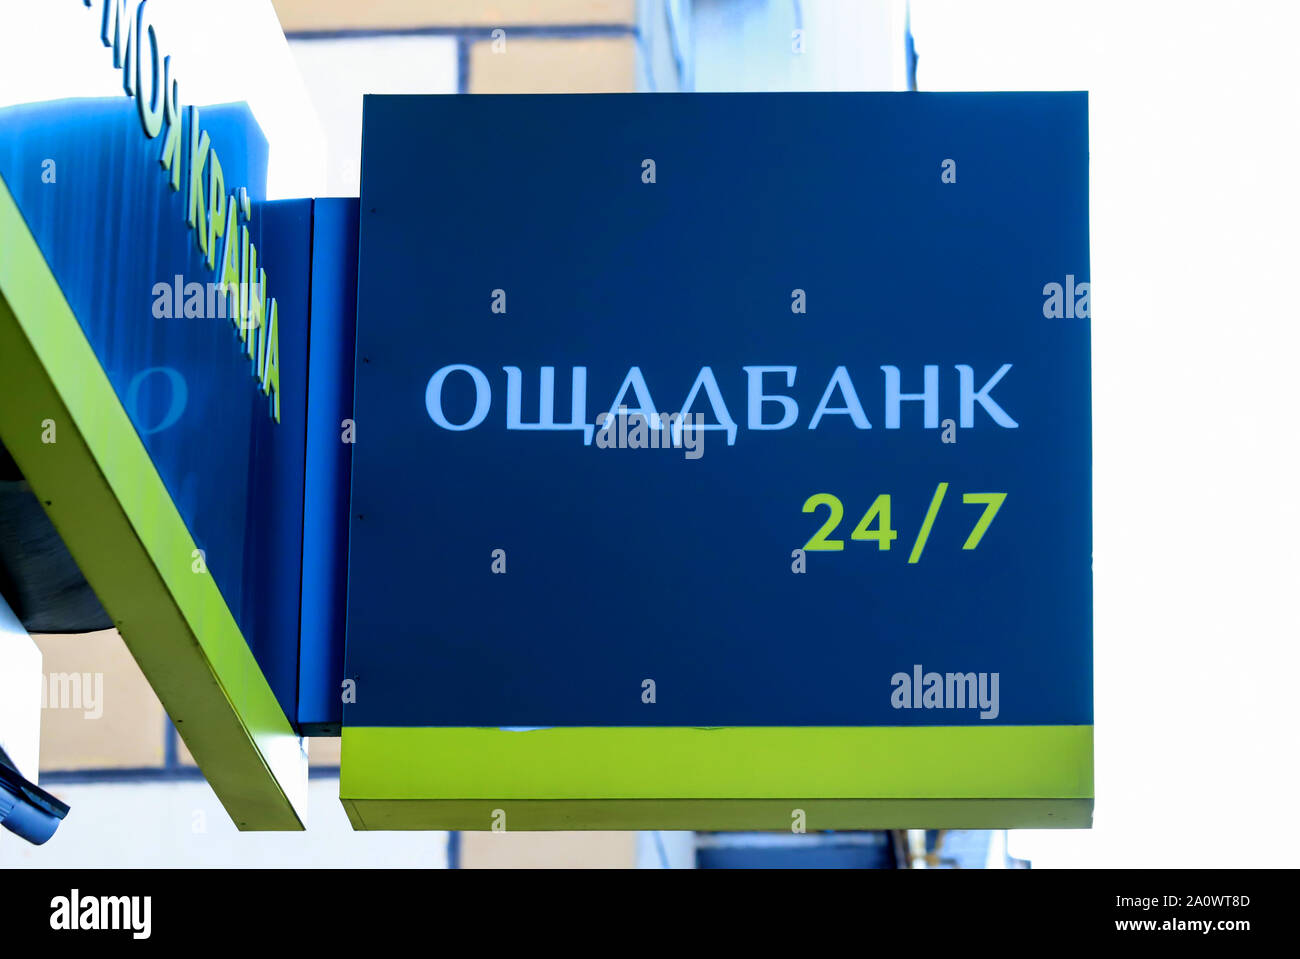 Dnepr ville, Dnepropetrovsk, Ukraine, 11,29 en 2018. L'icône de l'état banque ukrainienne Oschad avec l'inscription Oschadbank 247 suspendu dans financial Banque D'Images